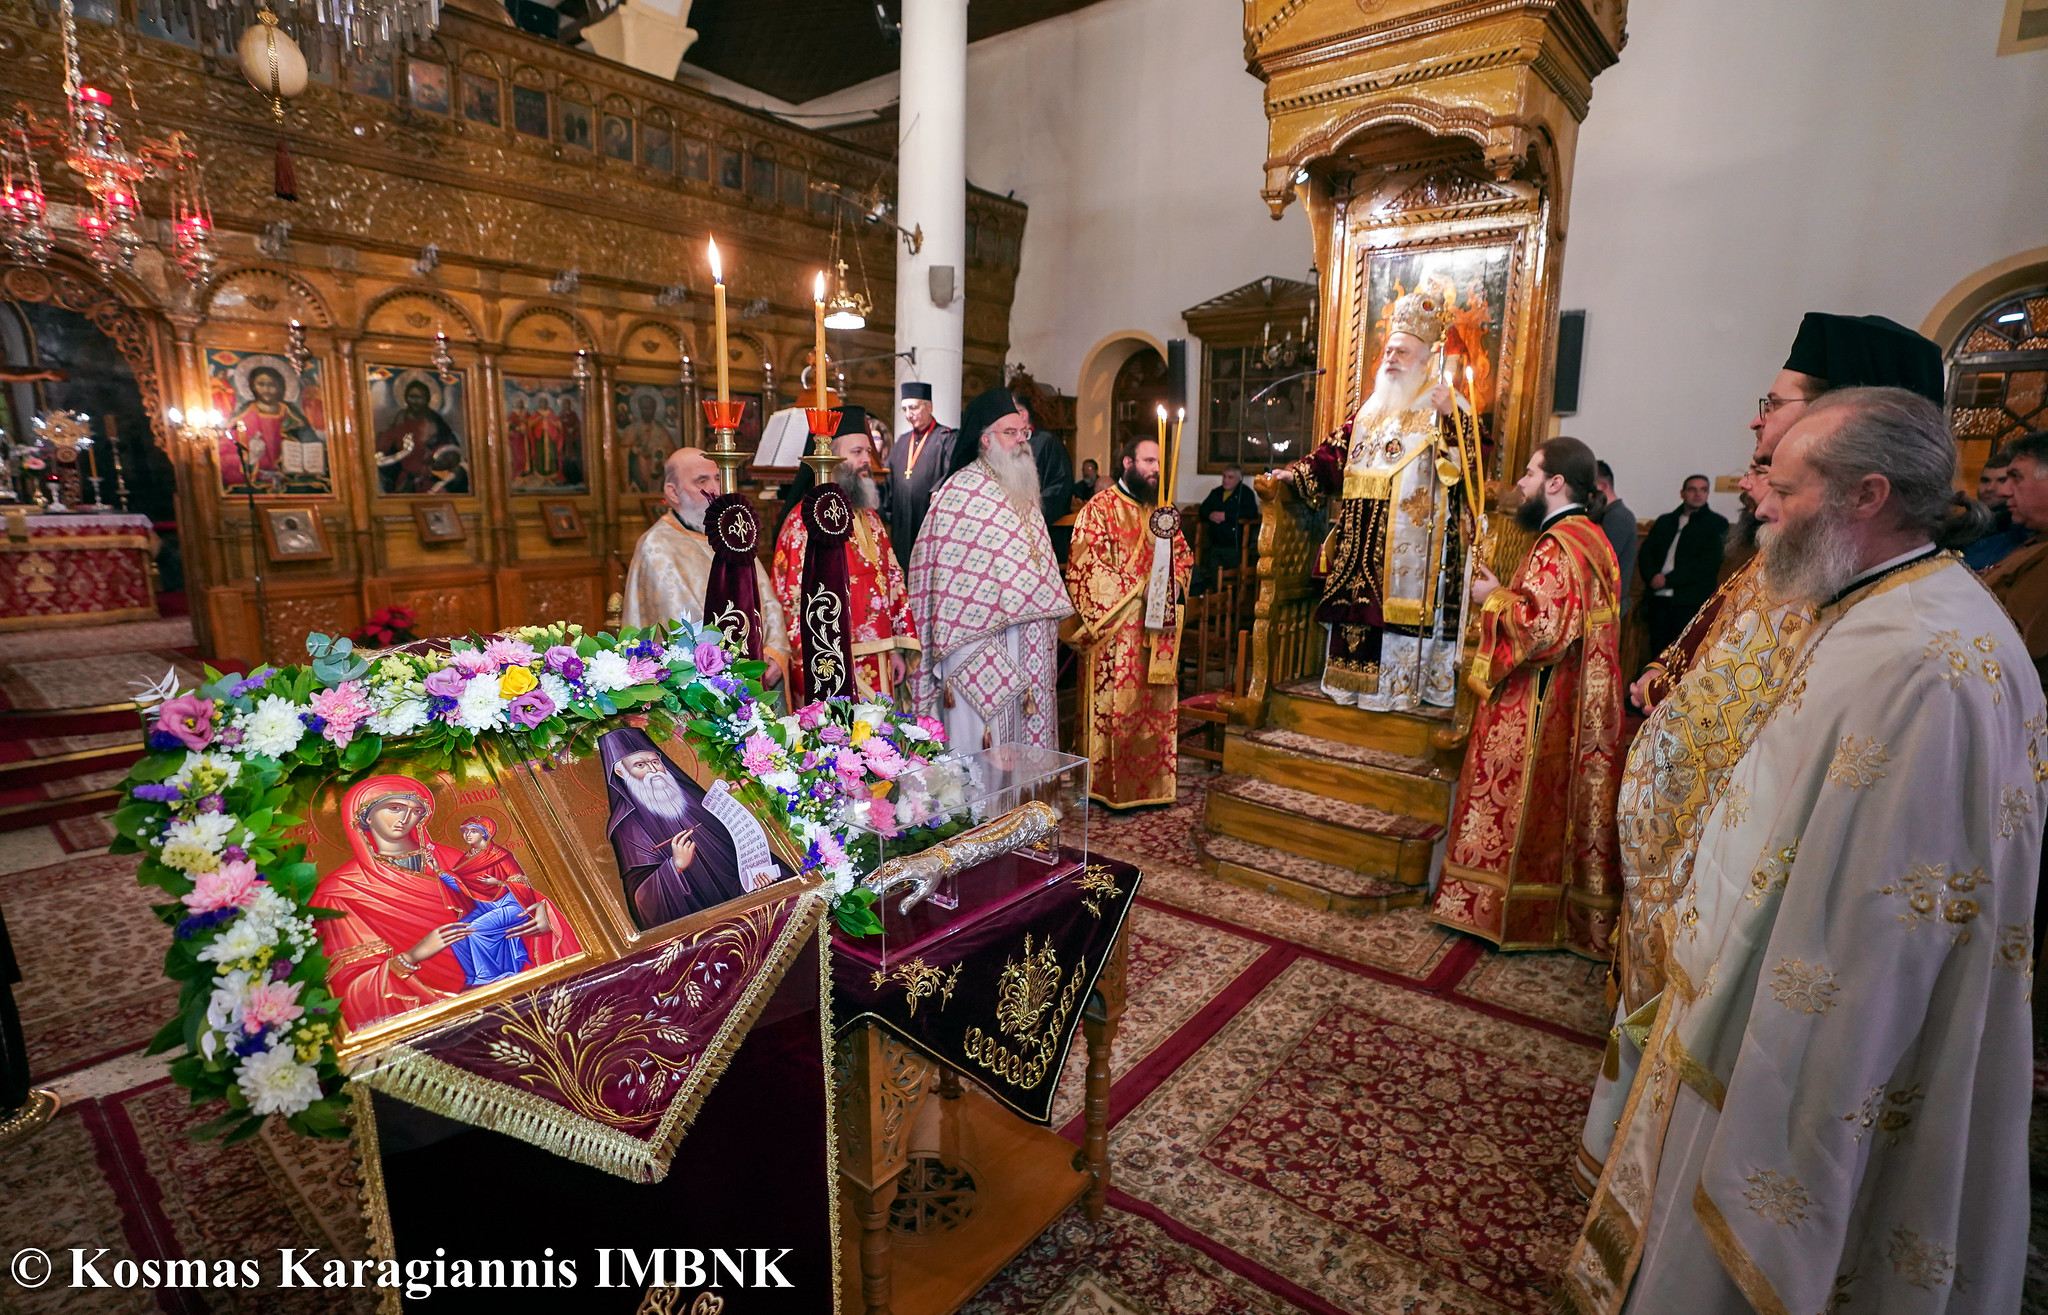 Πρώτος κοινός εορτασμός της Αγίας Άννης και του Οσίου Γερασίμου στην αγιοτόκο πόλη της Ναούσης